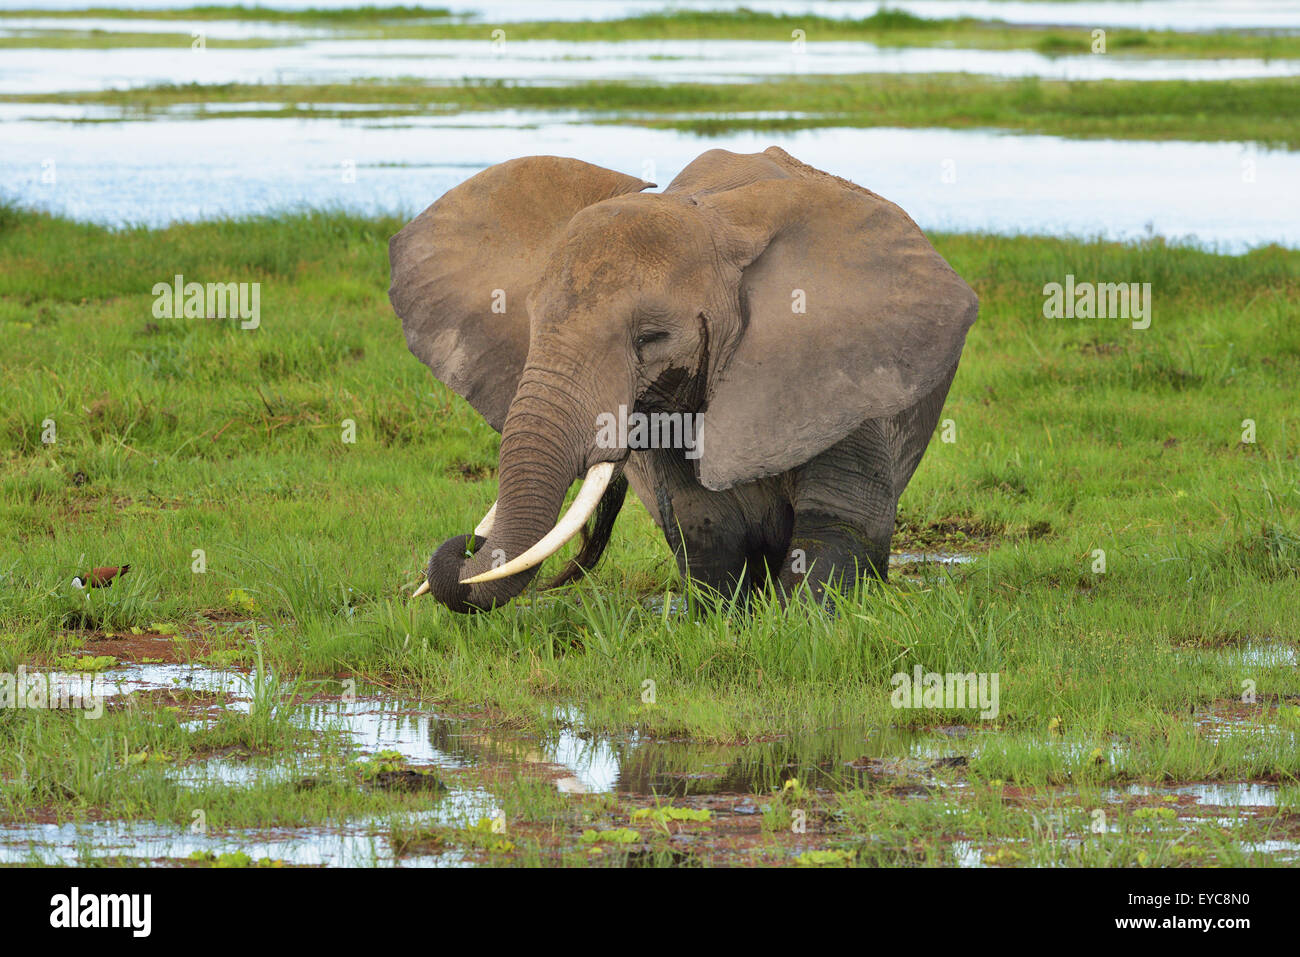 Bush africain elephant (Loxodonta africana), debout dans le marais et mange de l'herbe, Parc National d'Amboseli, Kenya Banque D'Images